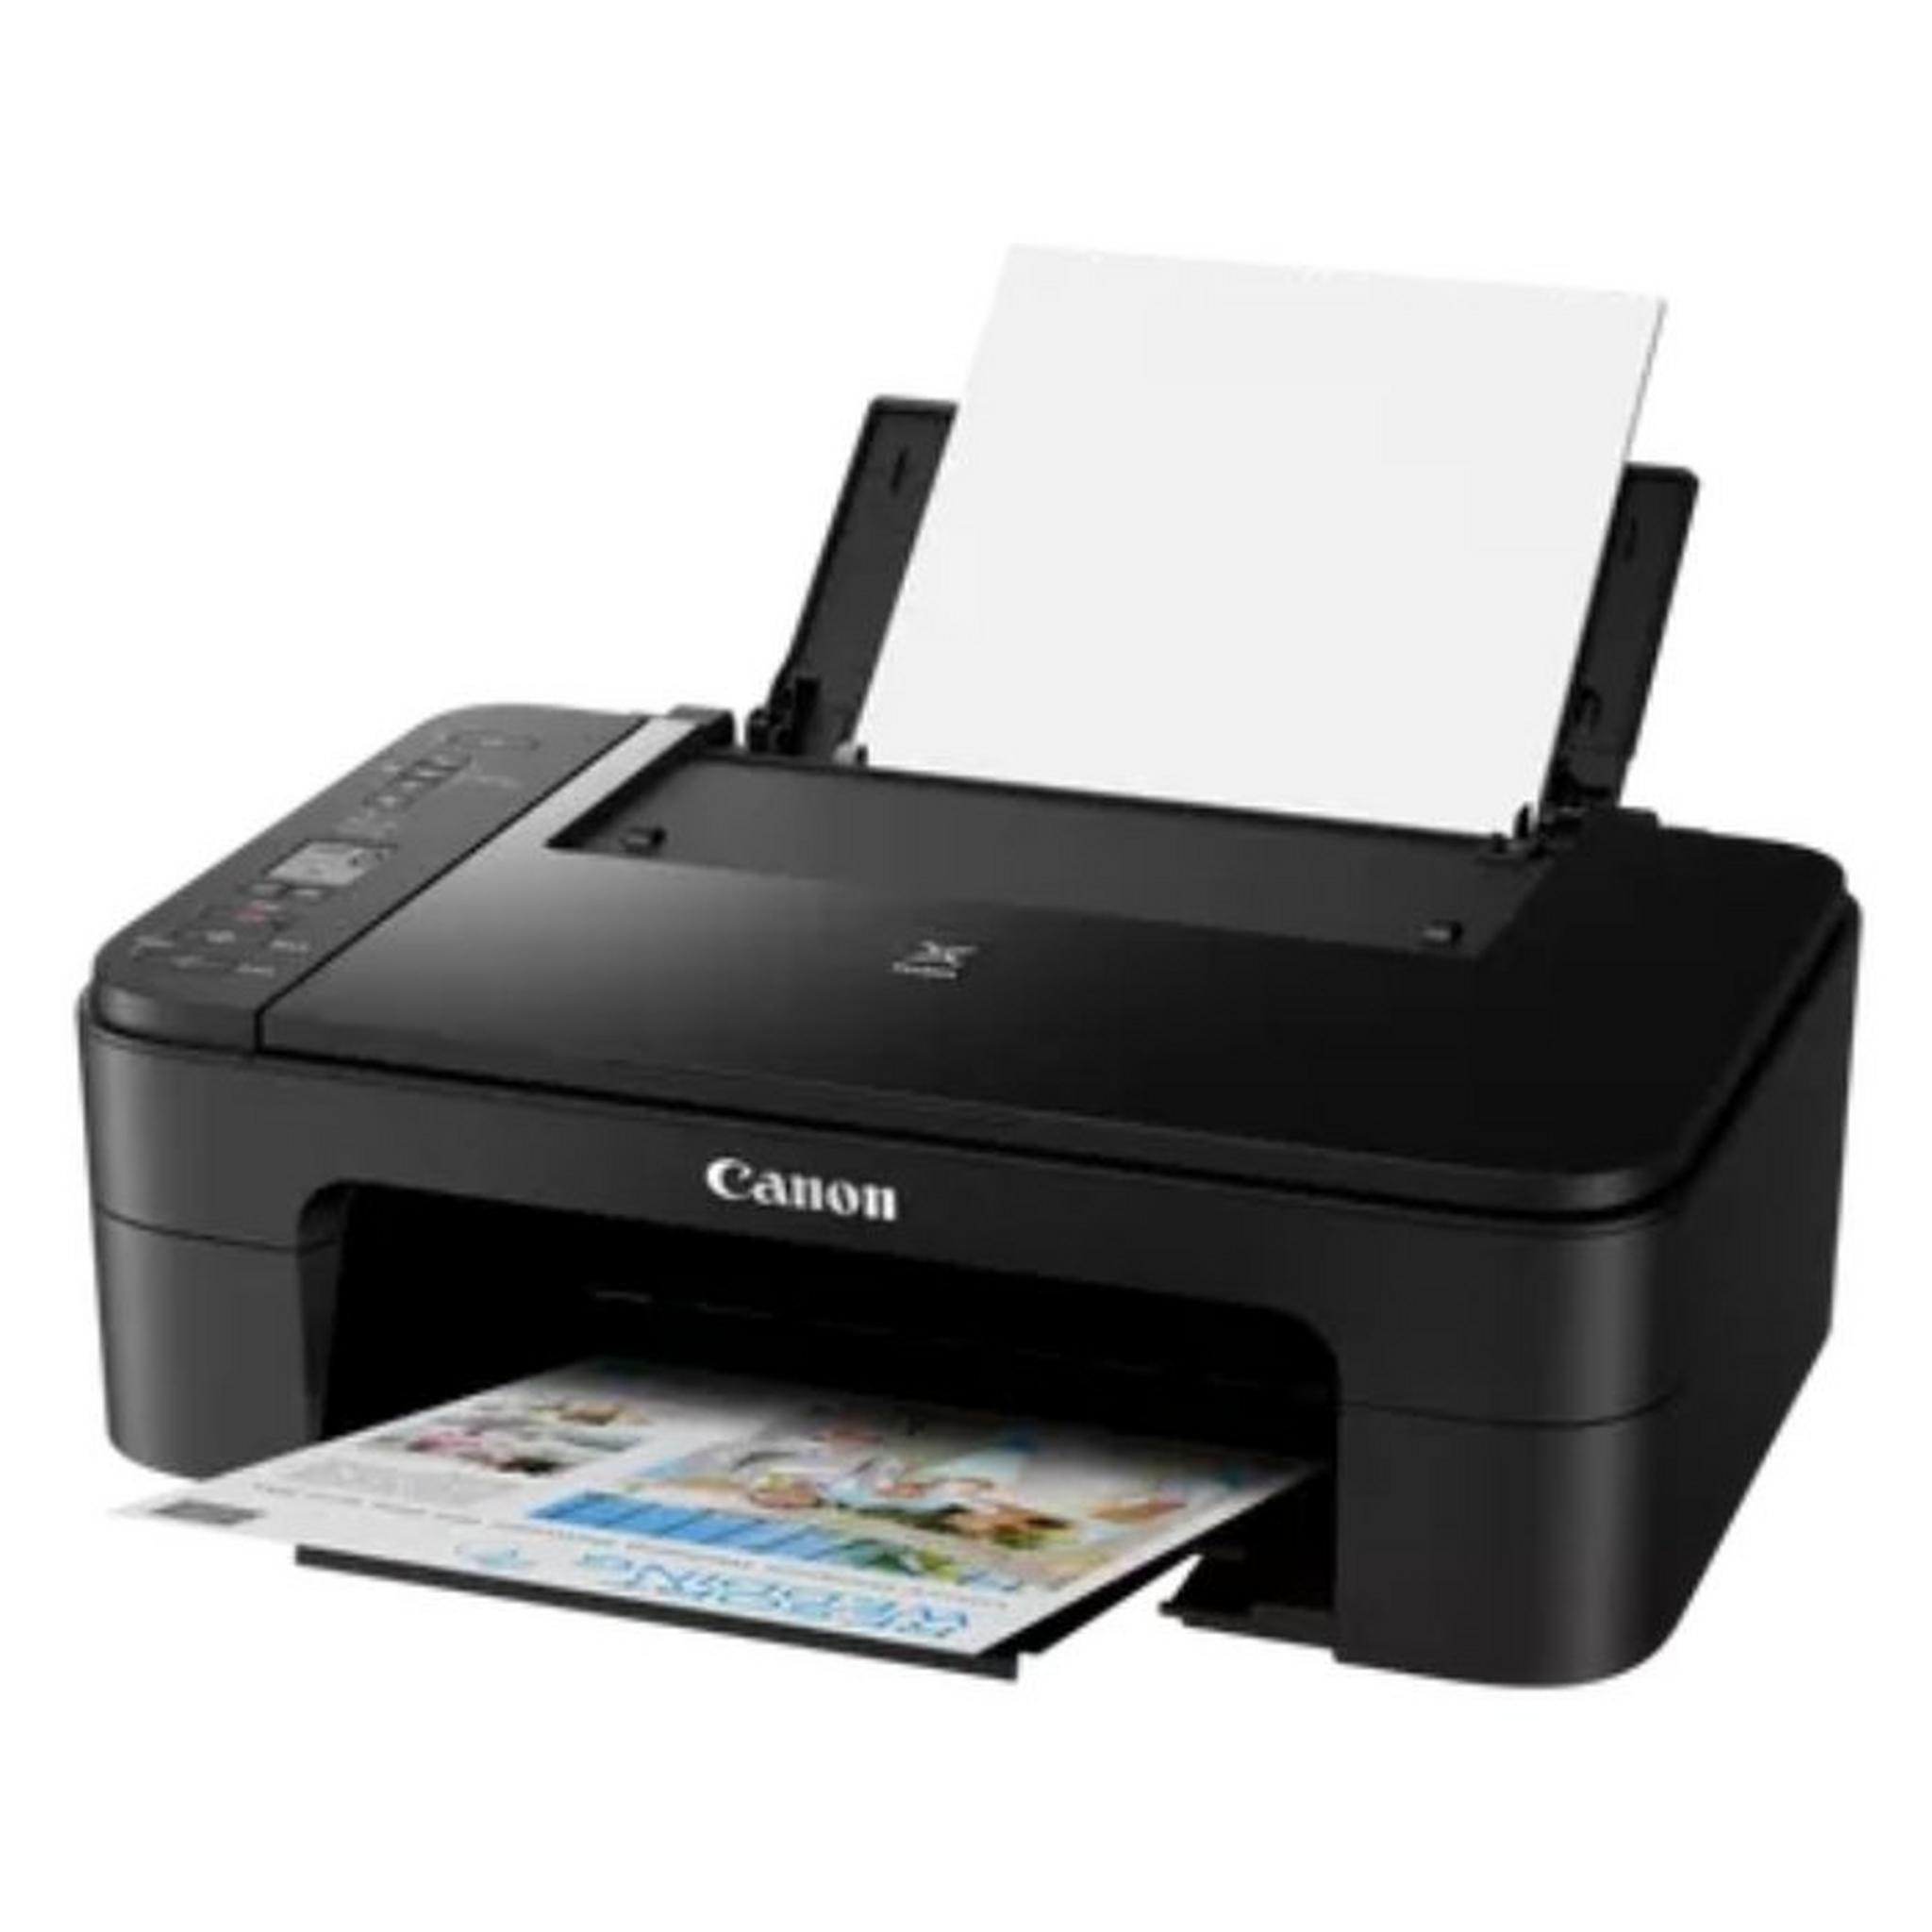 Canon Pixma 3 in 1 Inkjet Printer, TS3340 - Black